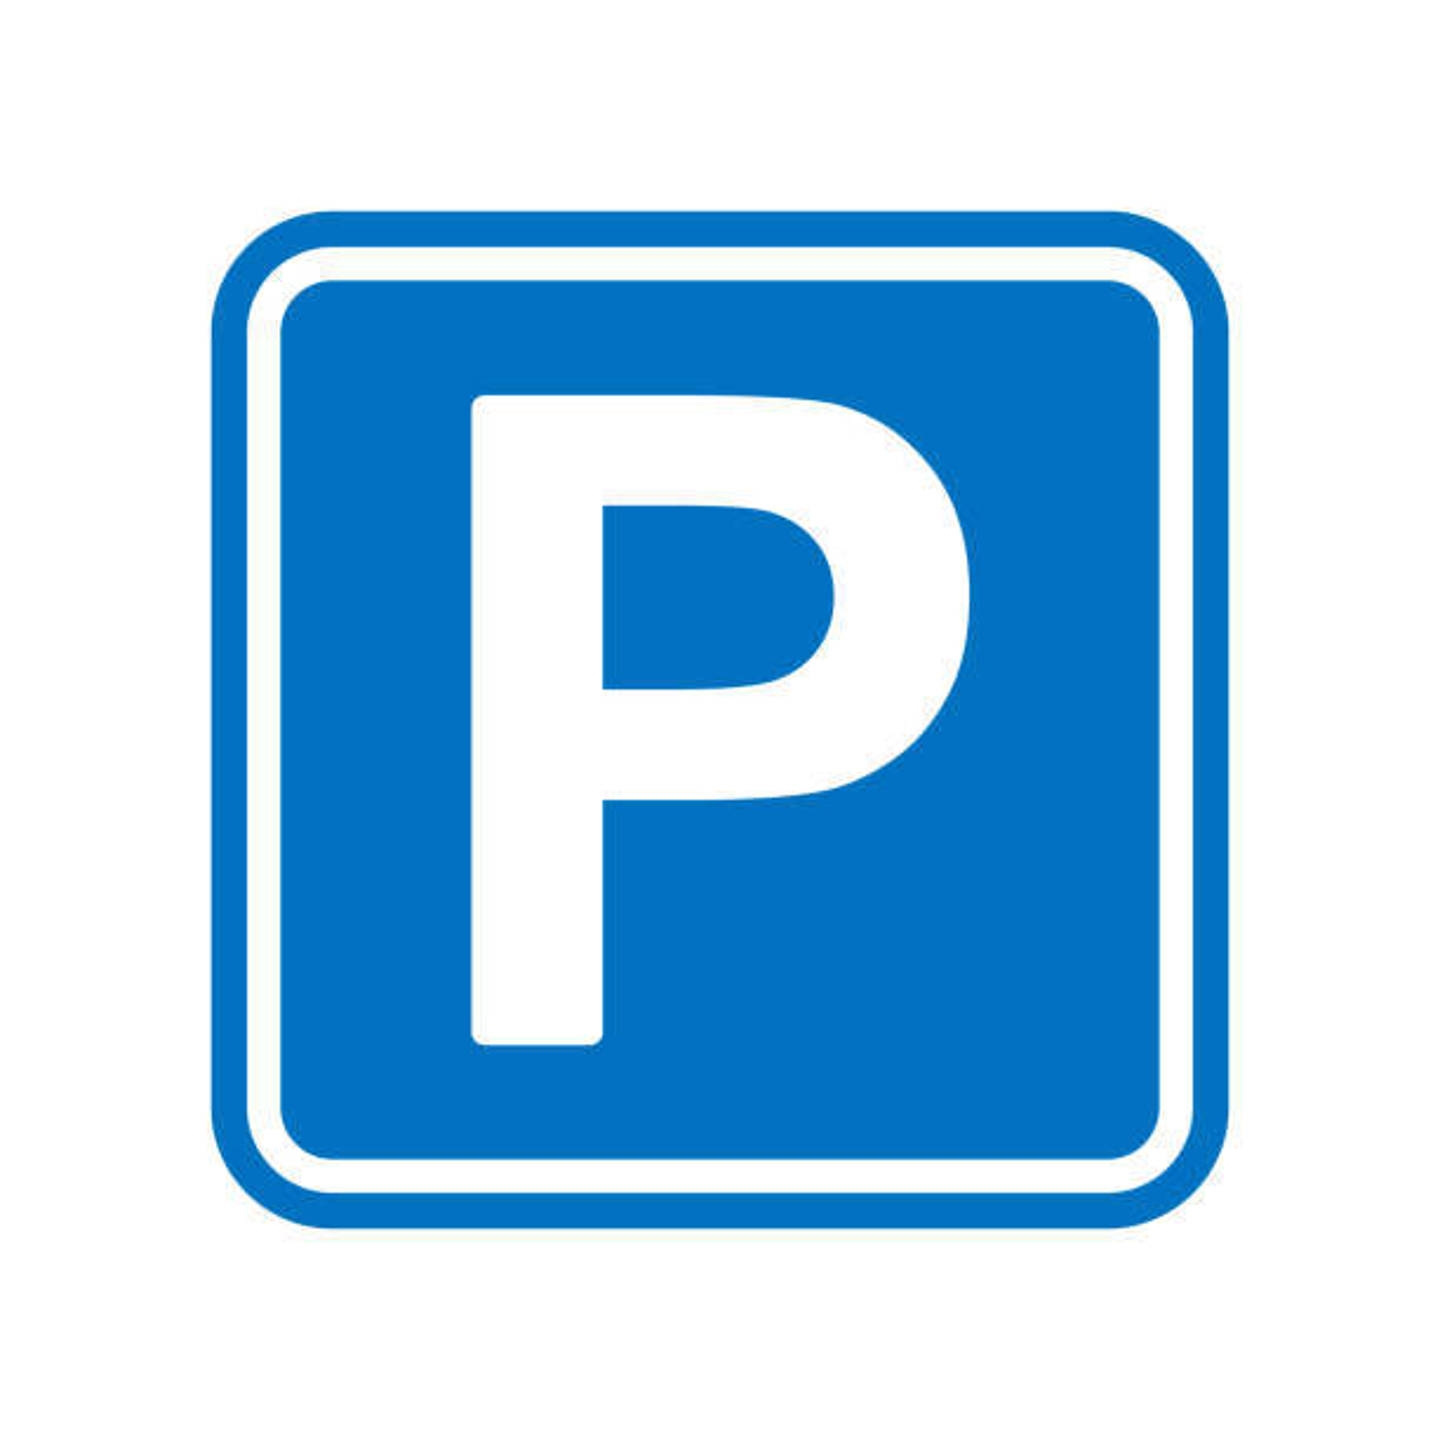 Parking & garage te  koop in Neder-Over-Heembeek 1120 16480.00€  slaapkamers 12.50m² - Zoekertje 1324760